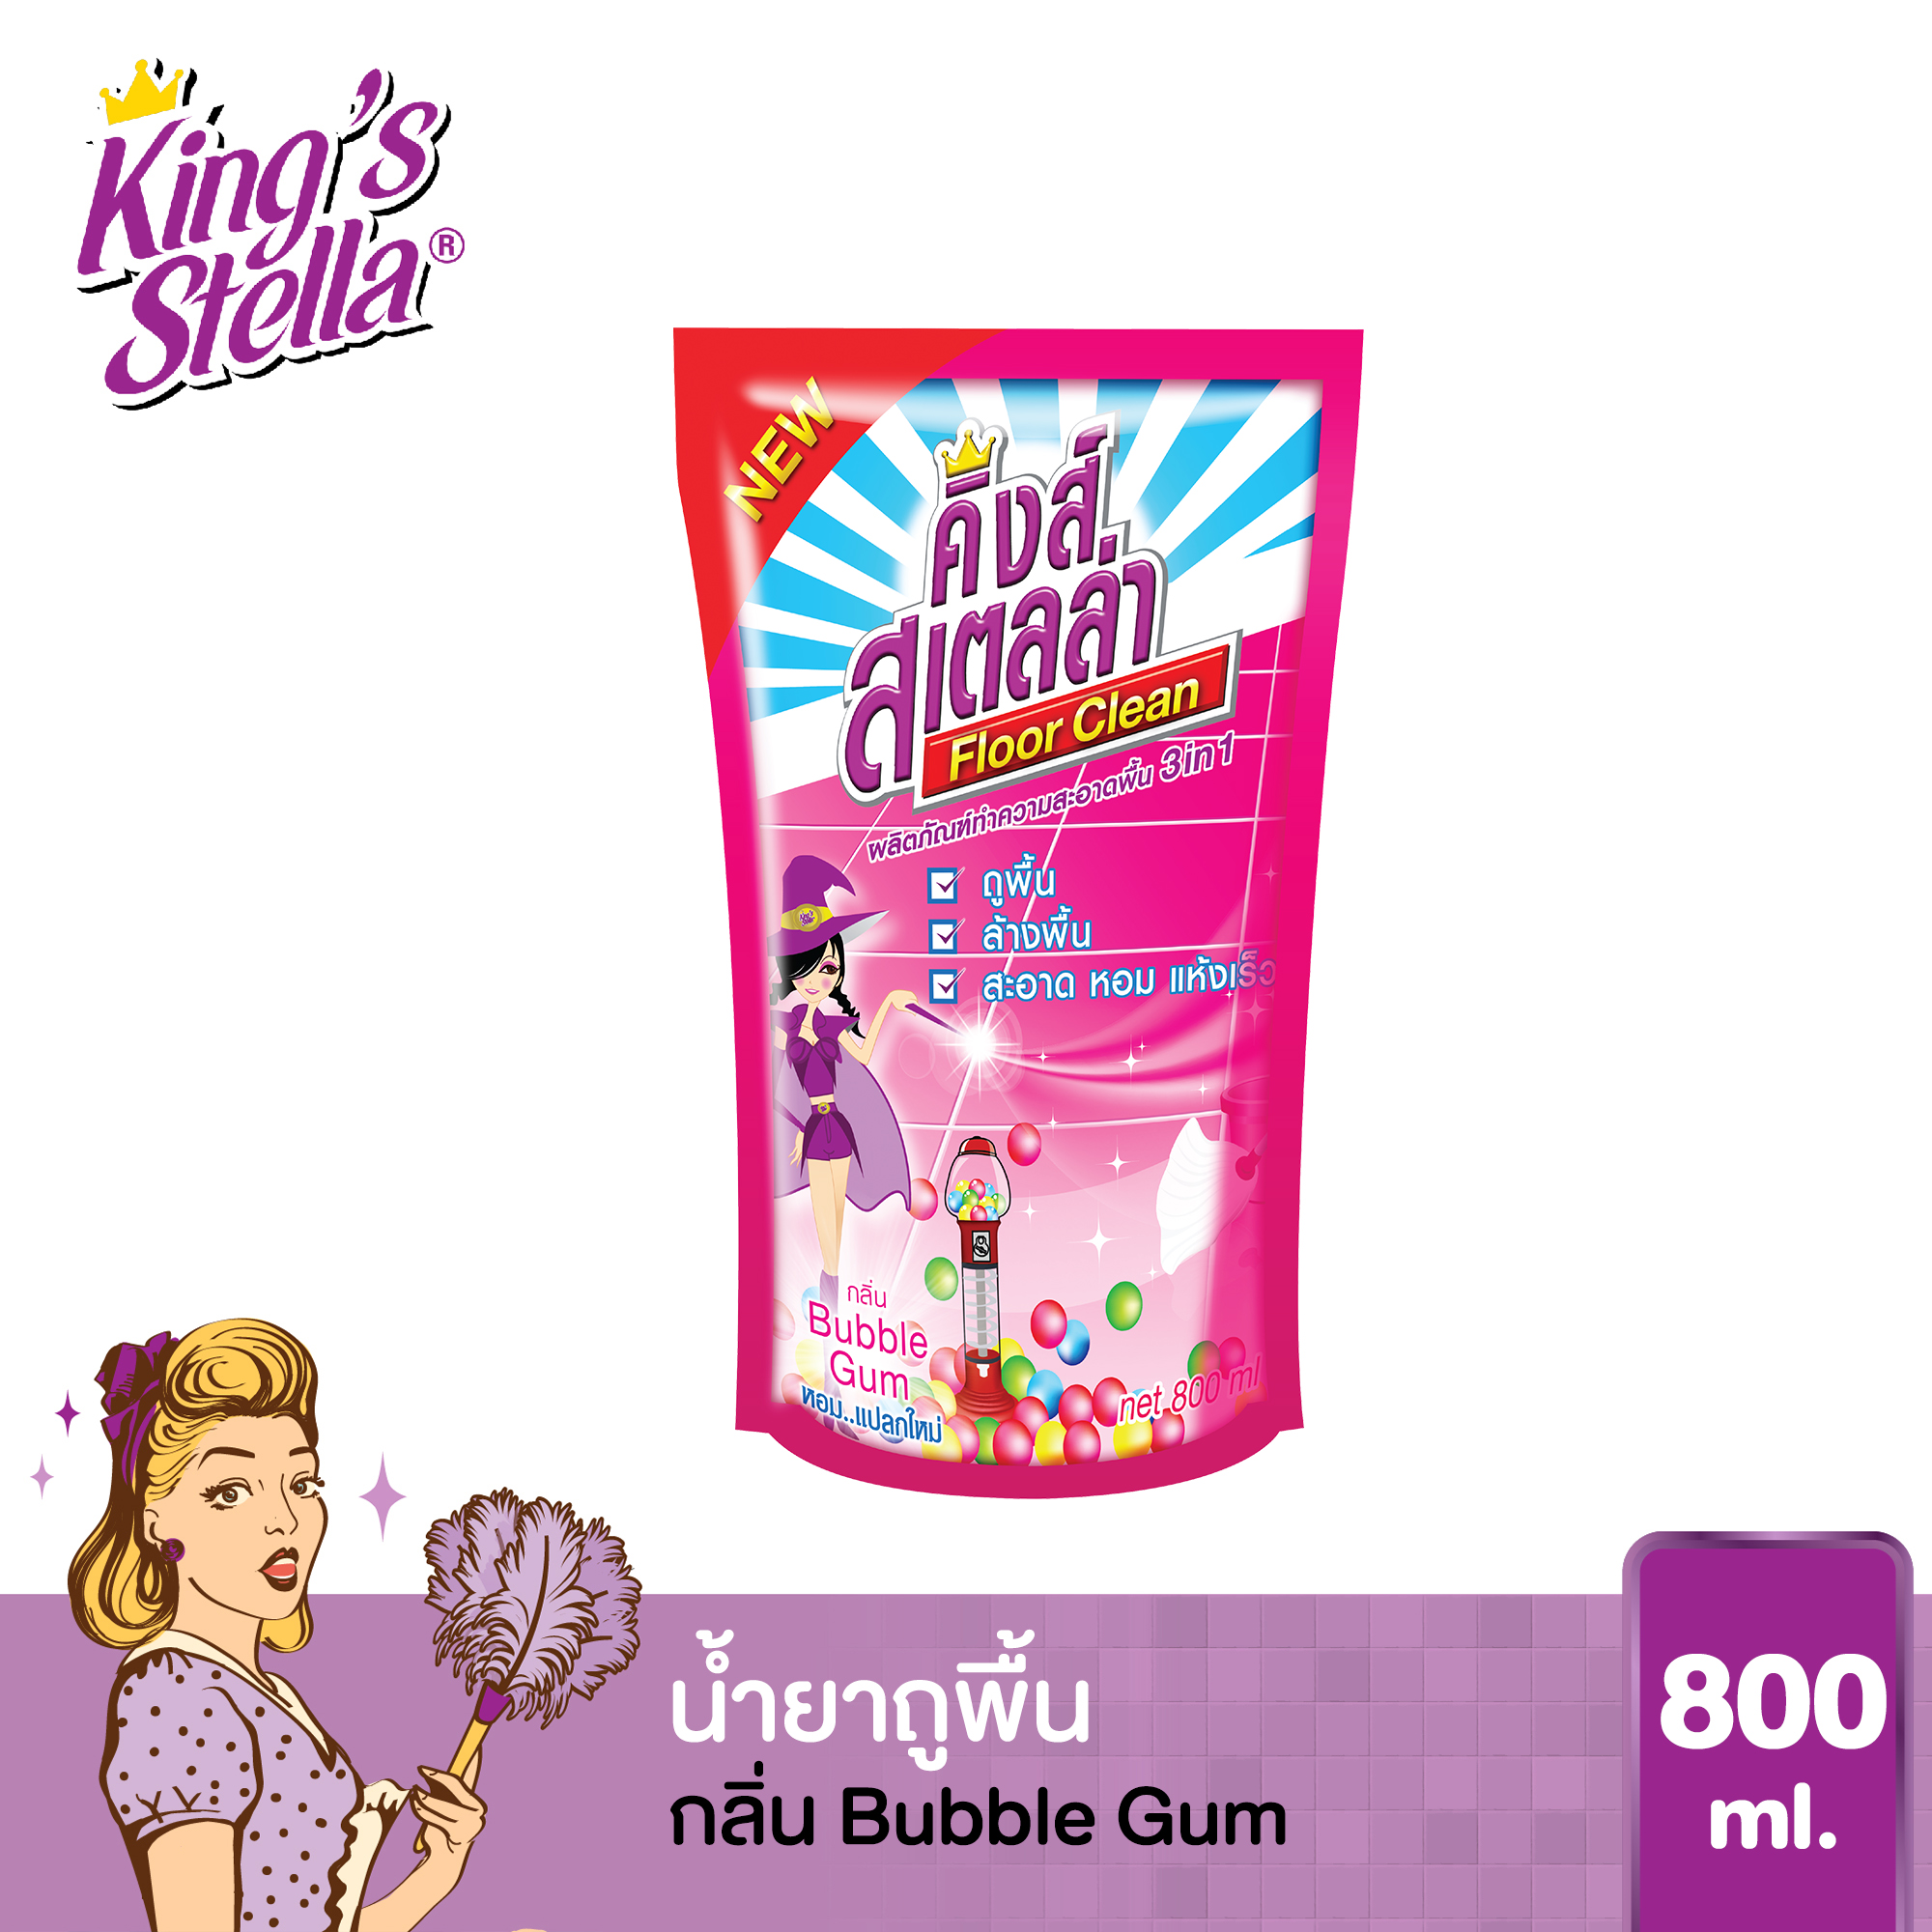 น้ำยาถูพื้น ขจัดกลิ่นอับ กลิ่นอันไม่พึงประสงค์ได้ในทันที King's Stella Floor Clean 800ml. กลิ่น Bubble Gum